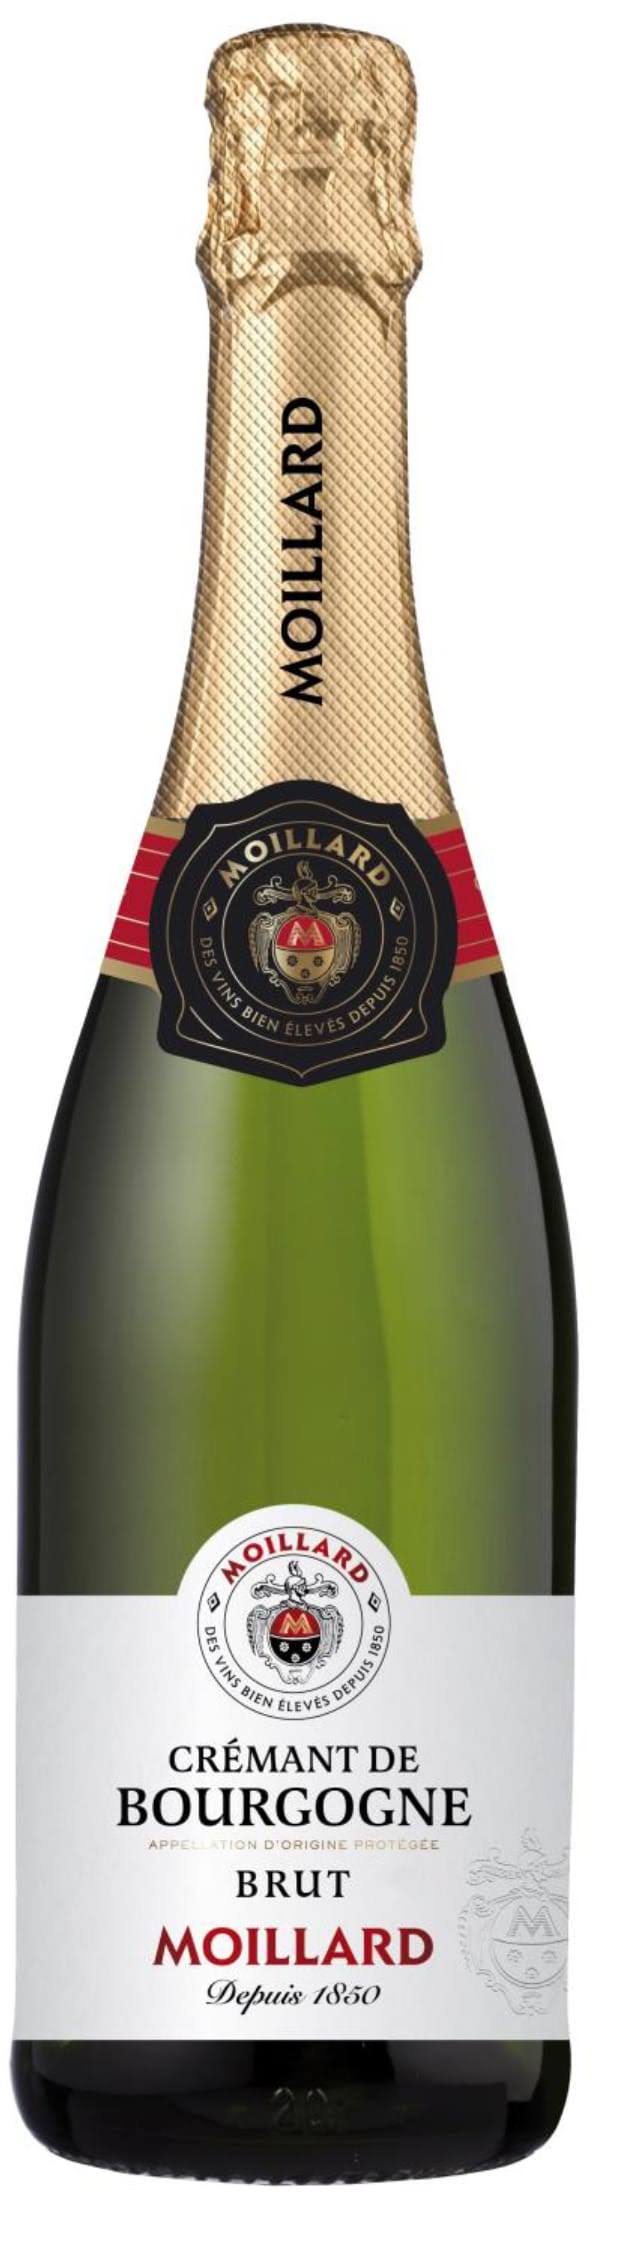 Moillard Cremant de Bourgogne Brut 750ml